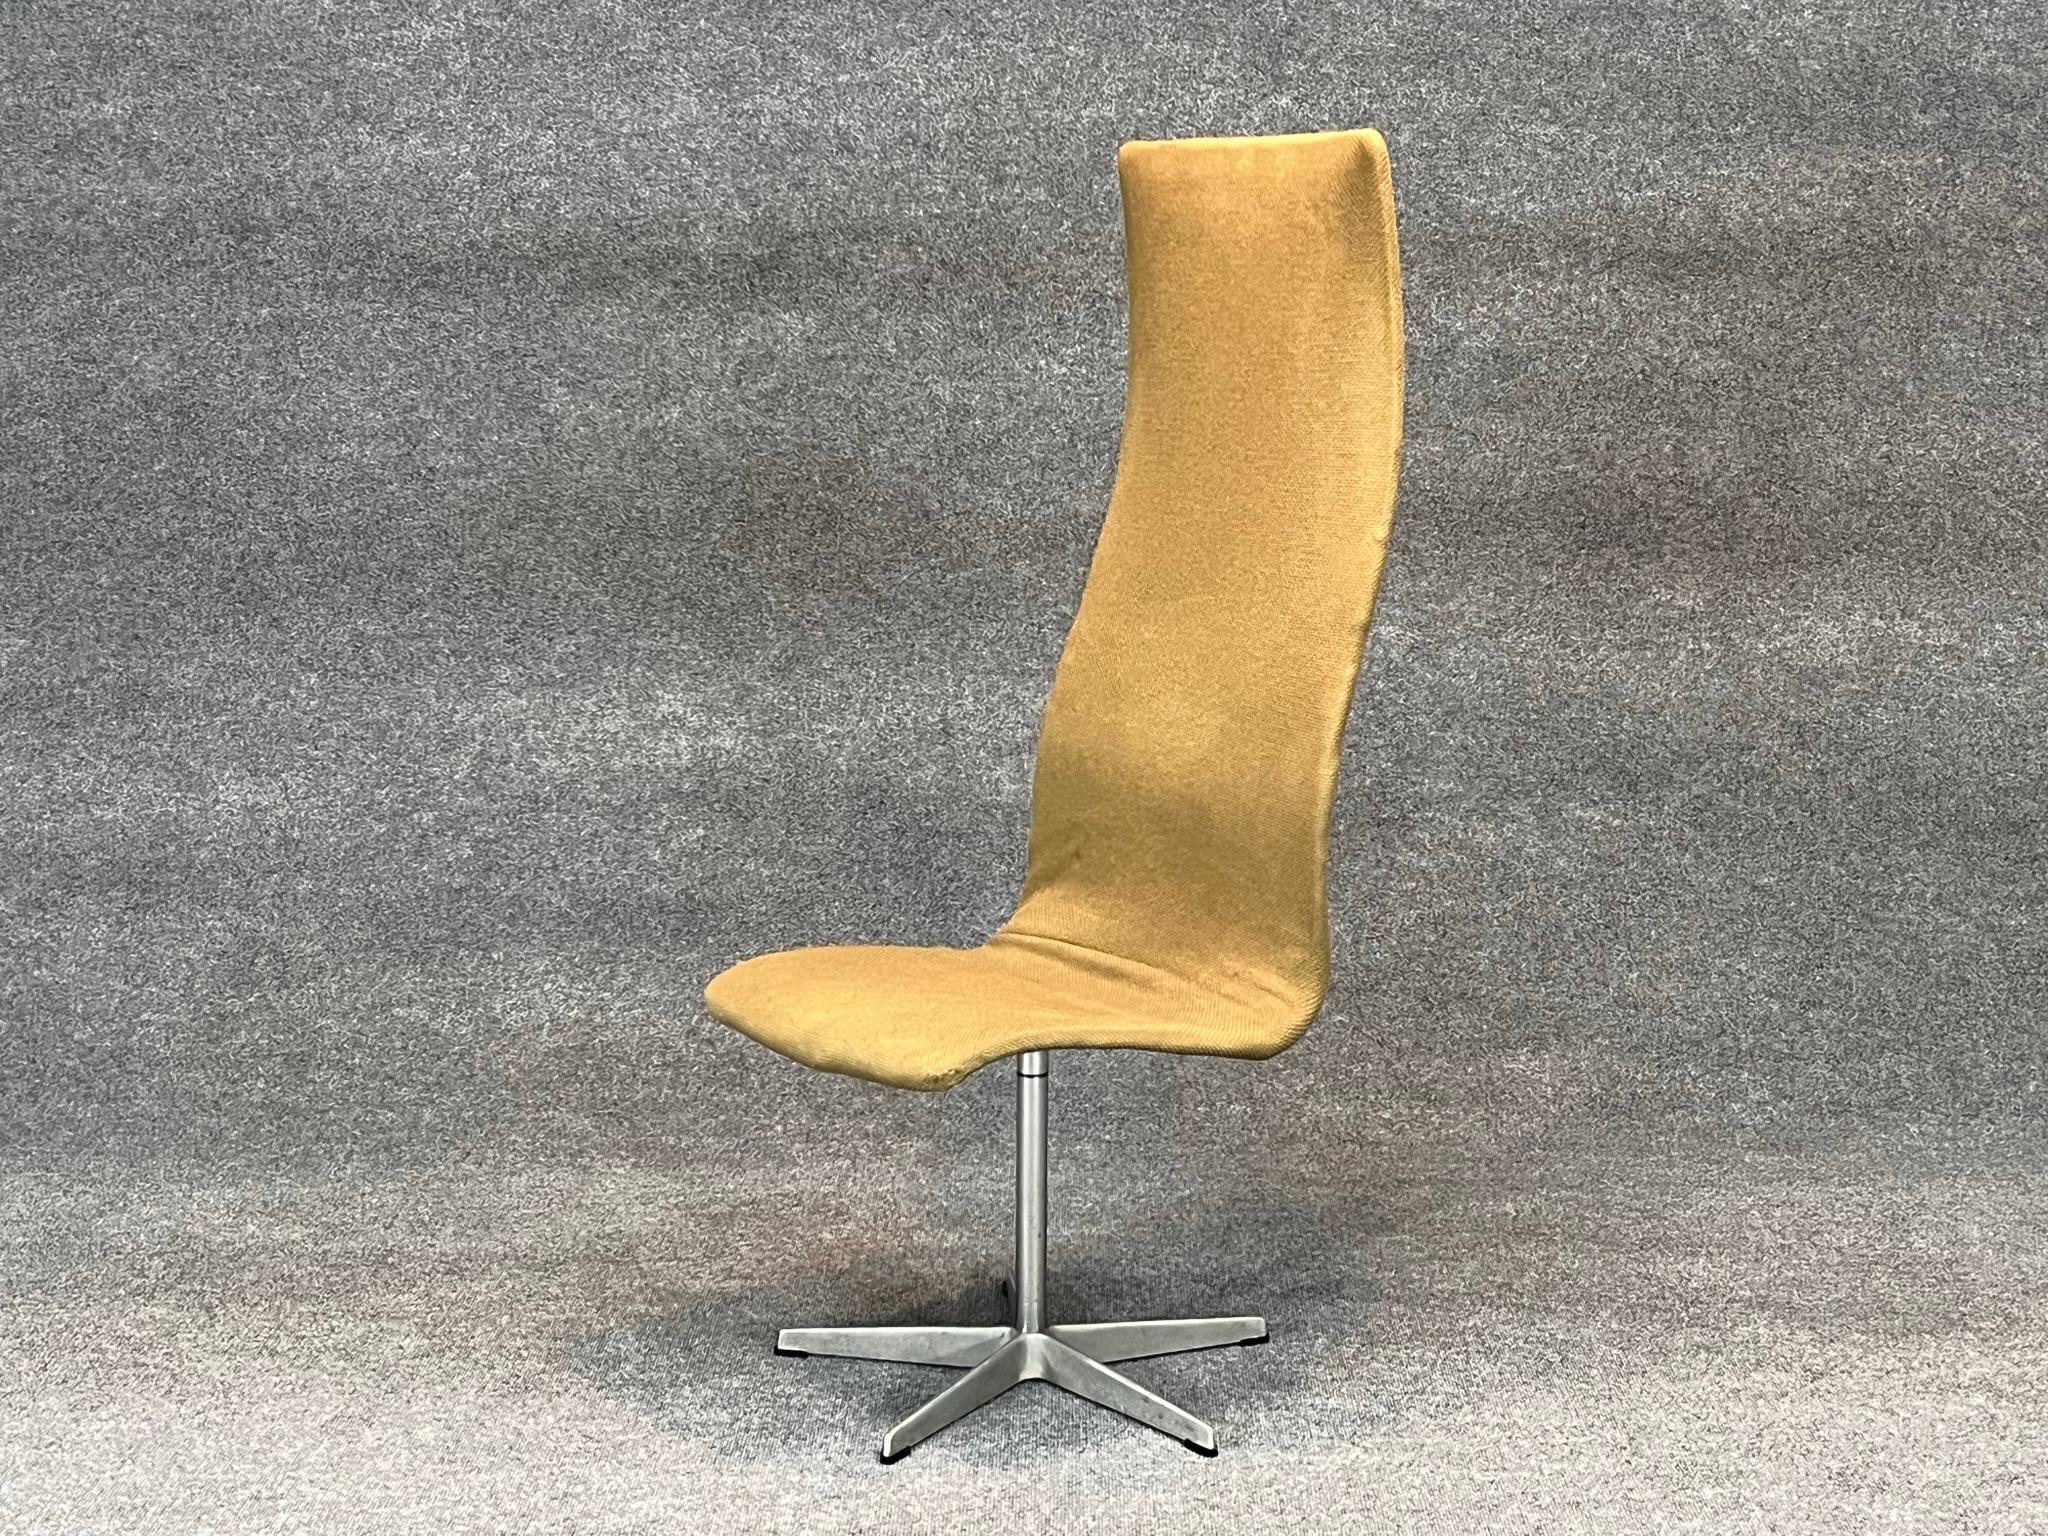 Mid-Century Modern Danish Modern High Back Swivel Oxford chair by Arne Jacobsen for Fritz Hansen